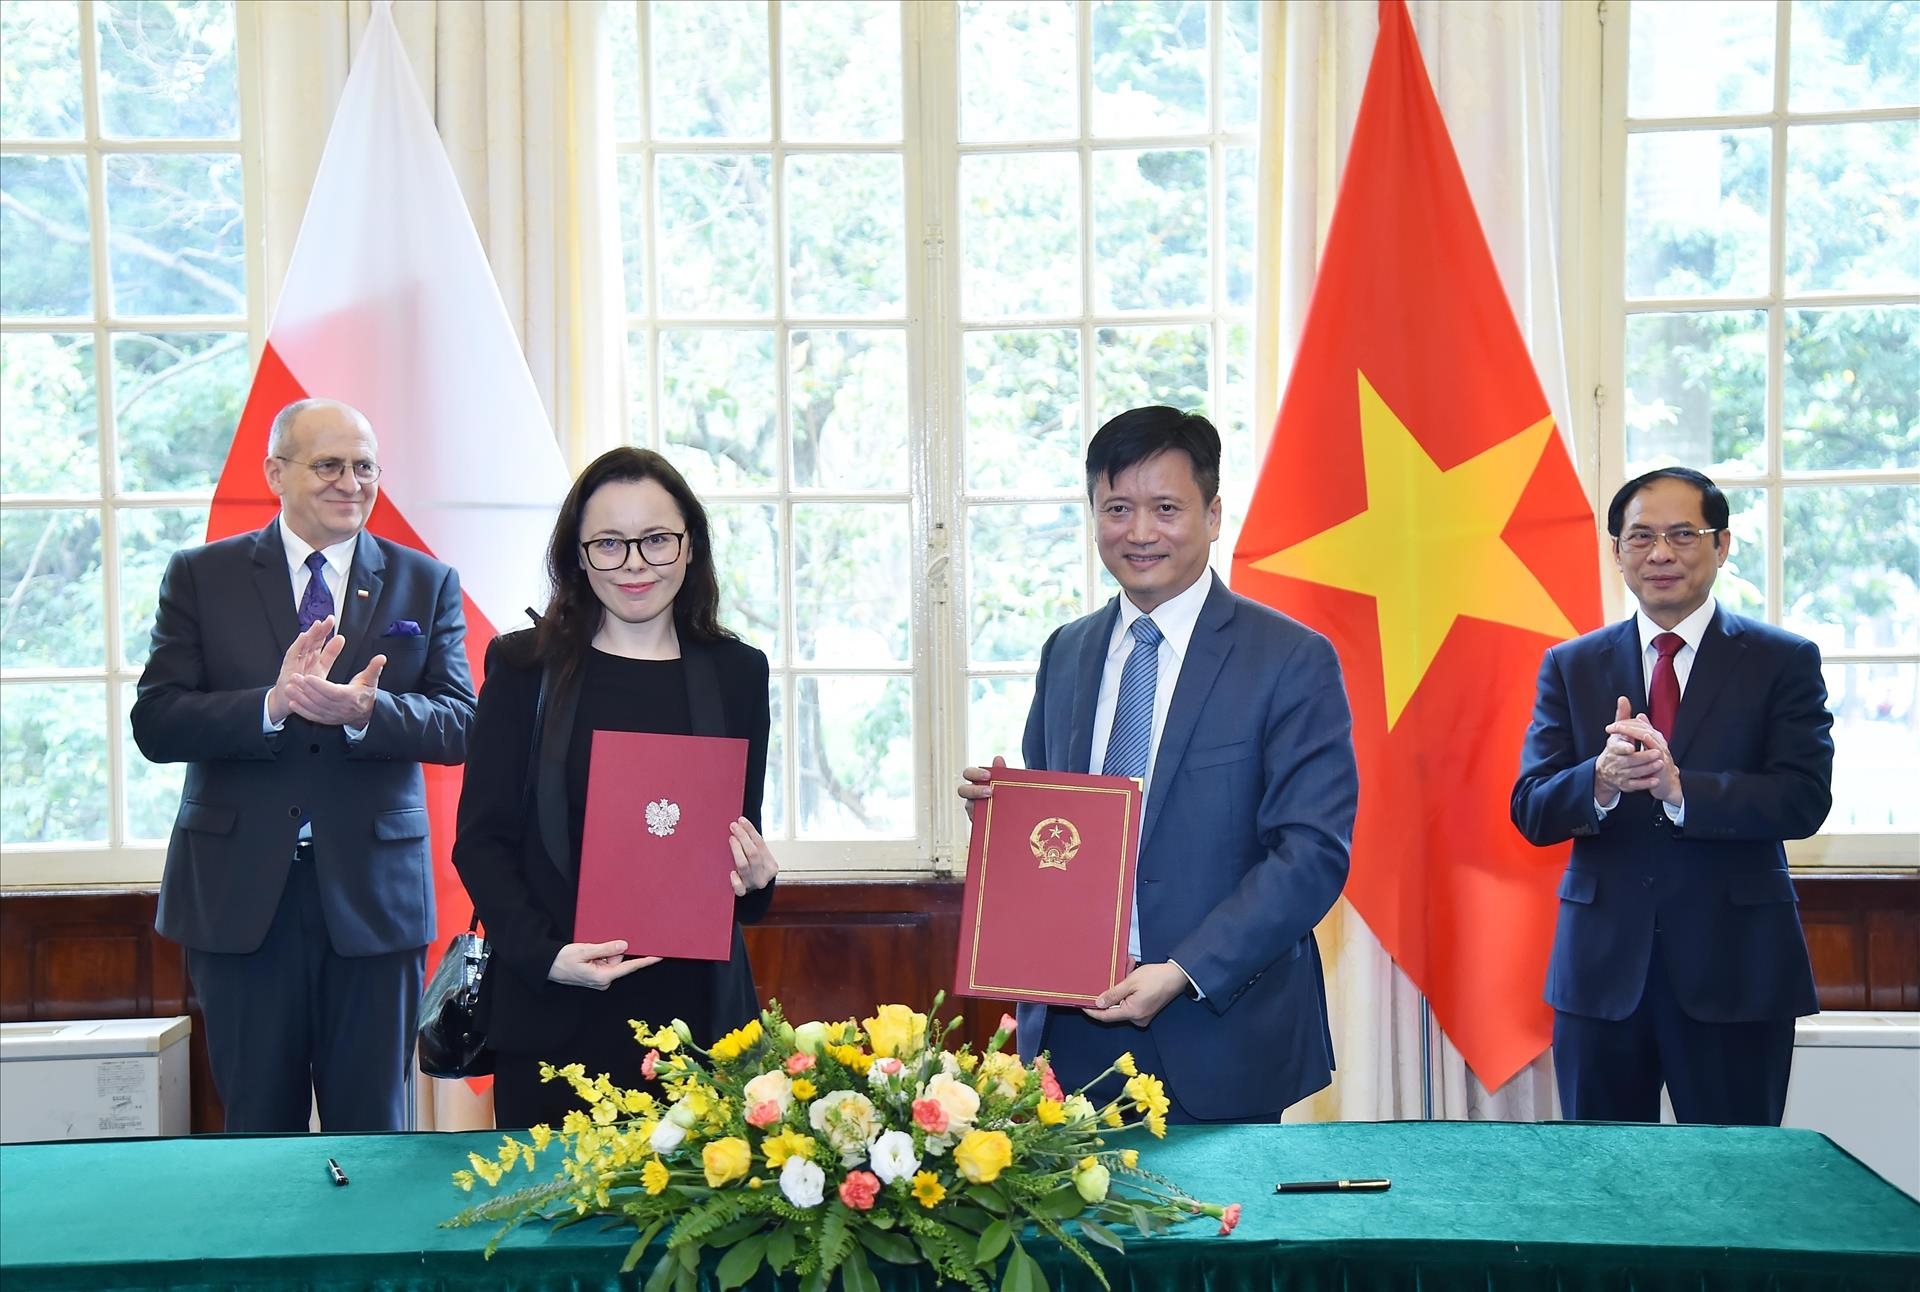 双方已签署了越南外交学院与波兰外交学院字行间的合作协议。